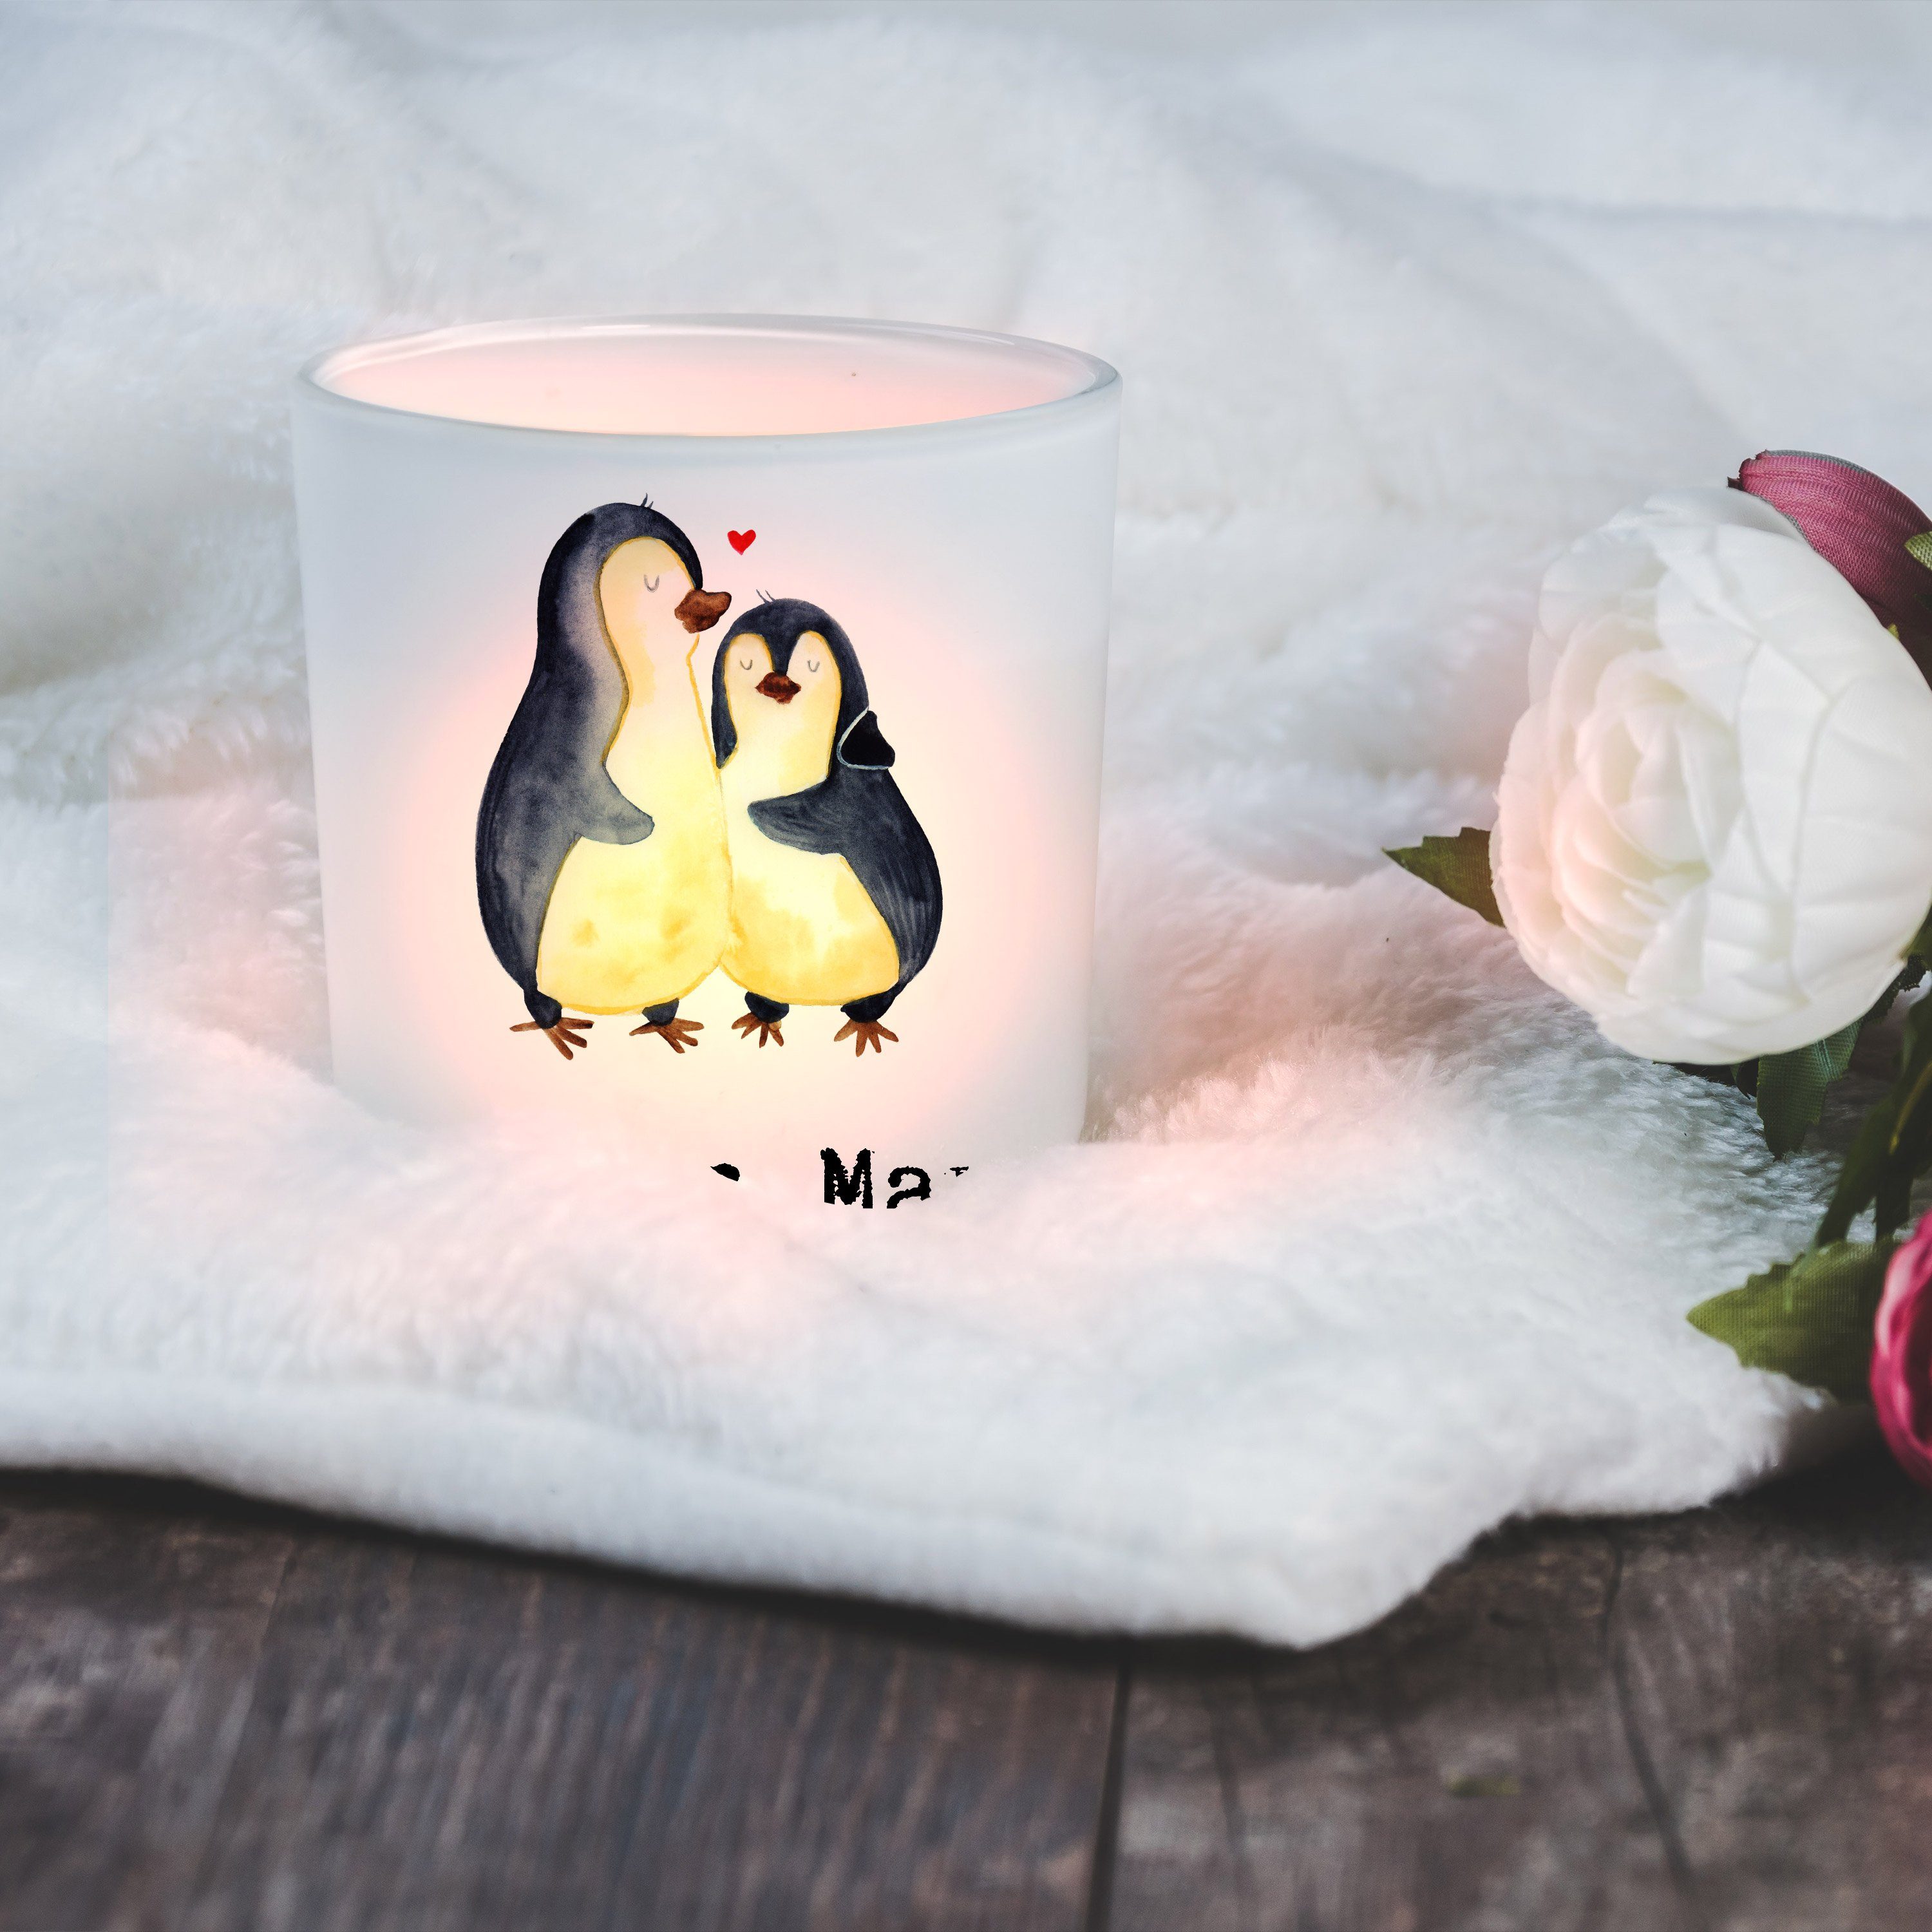 St) Transparent - & Mann Welt Windlicht Pinguin der Geschenk, Bester Mrs. Mr. - Lebensgefährte Panda (1